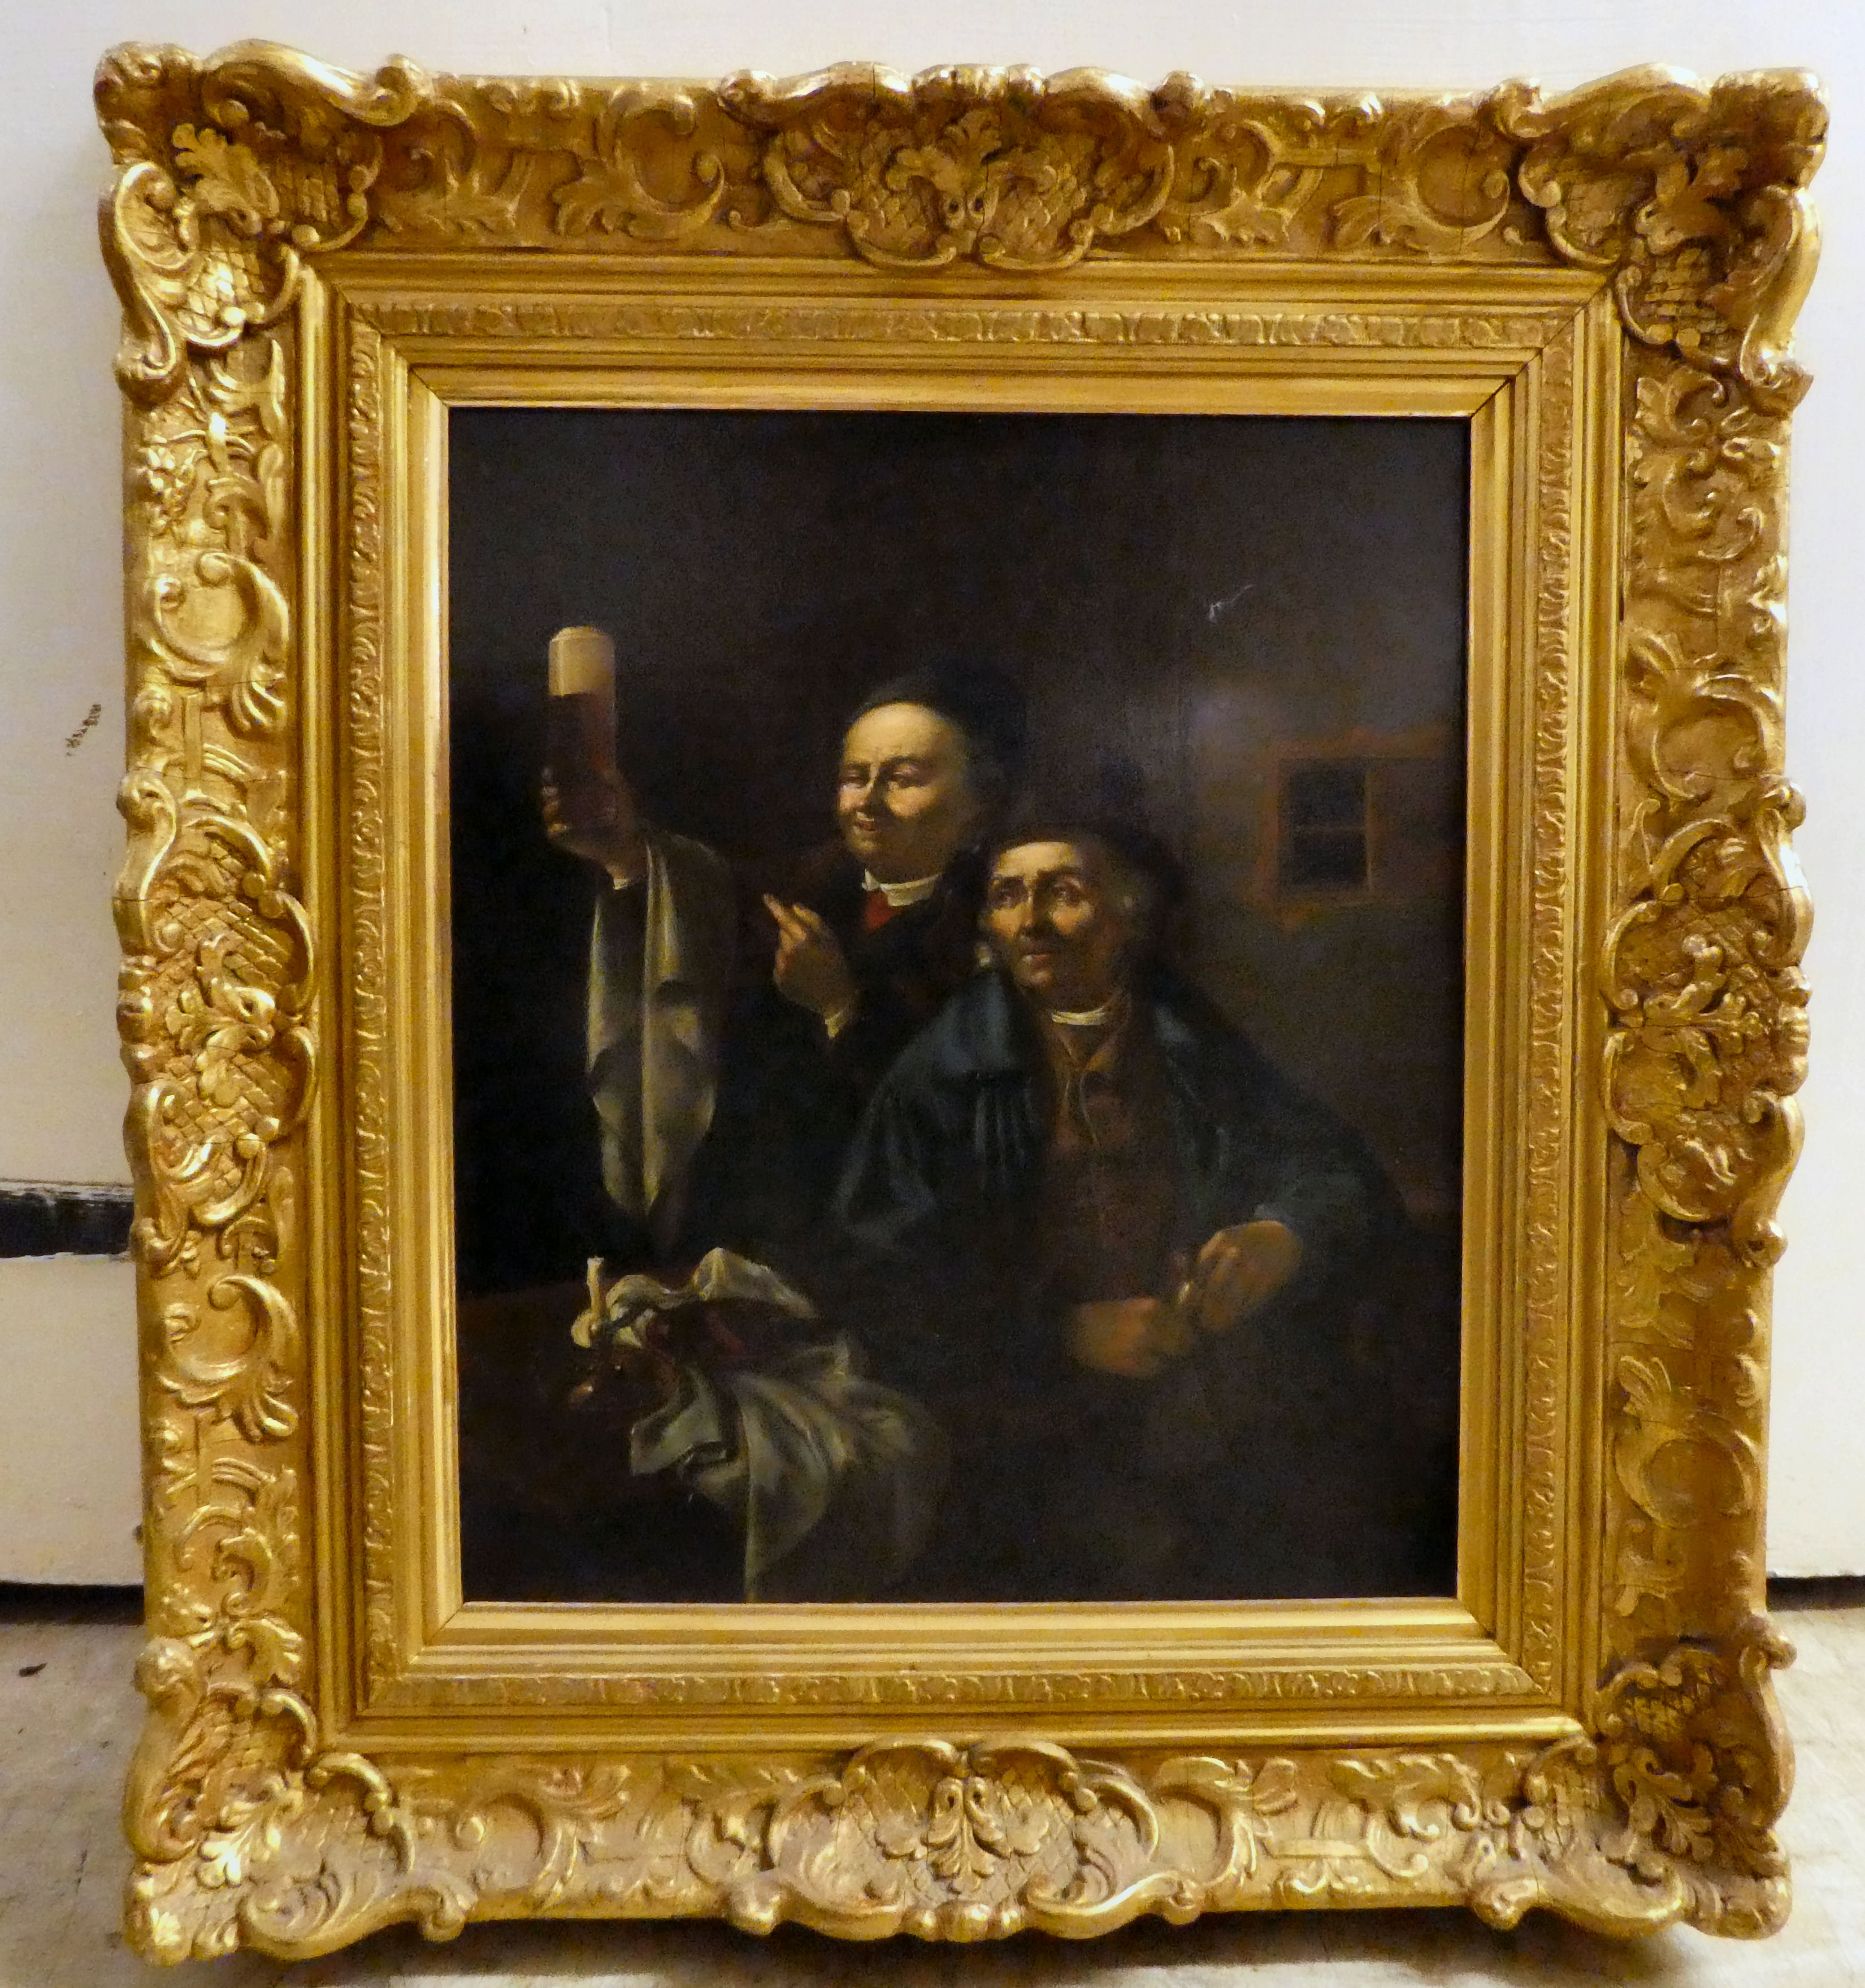 19thC European School - two men in a tavern  oil on board  12" x 10"  framed